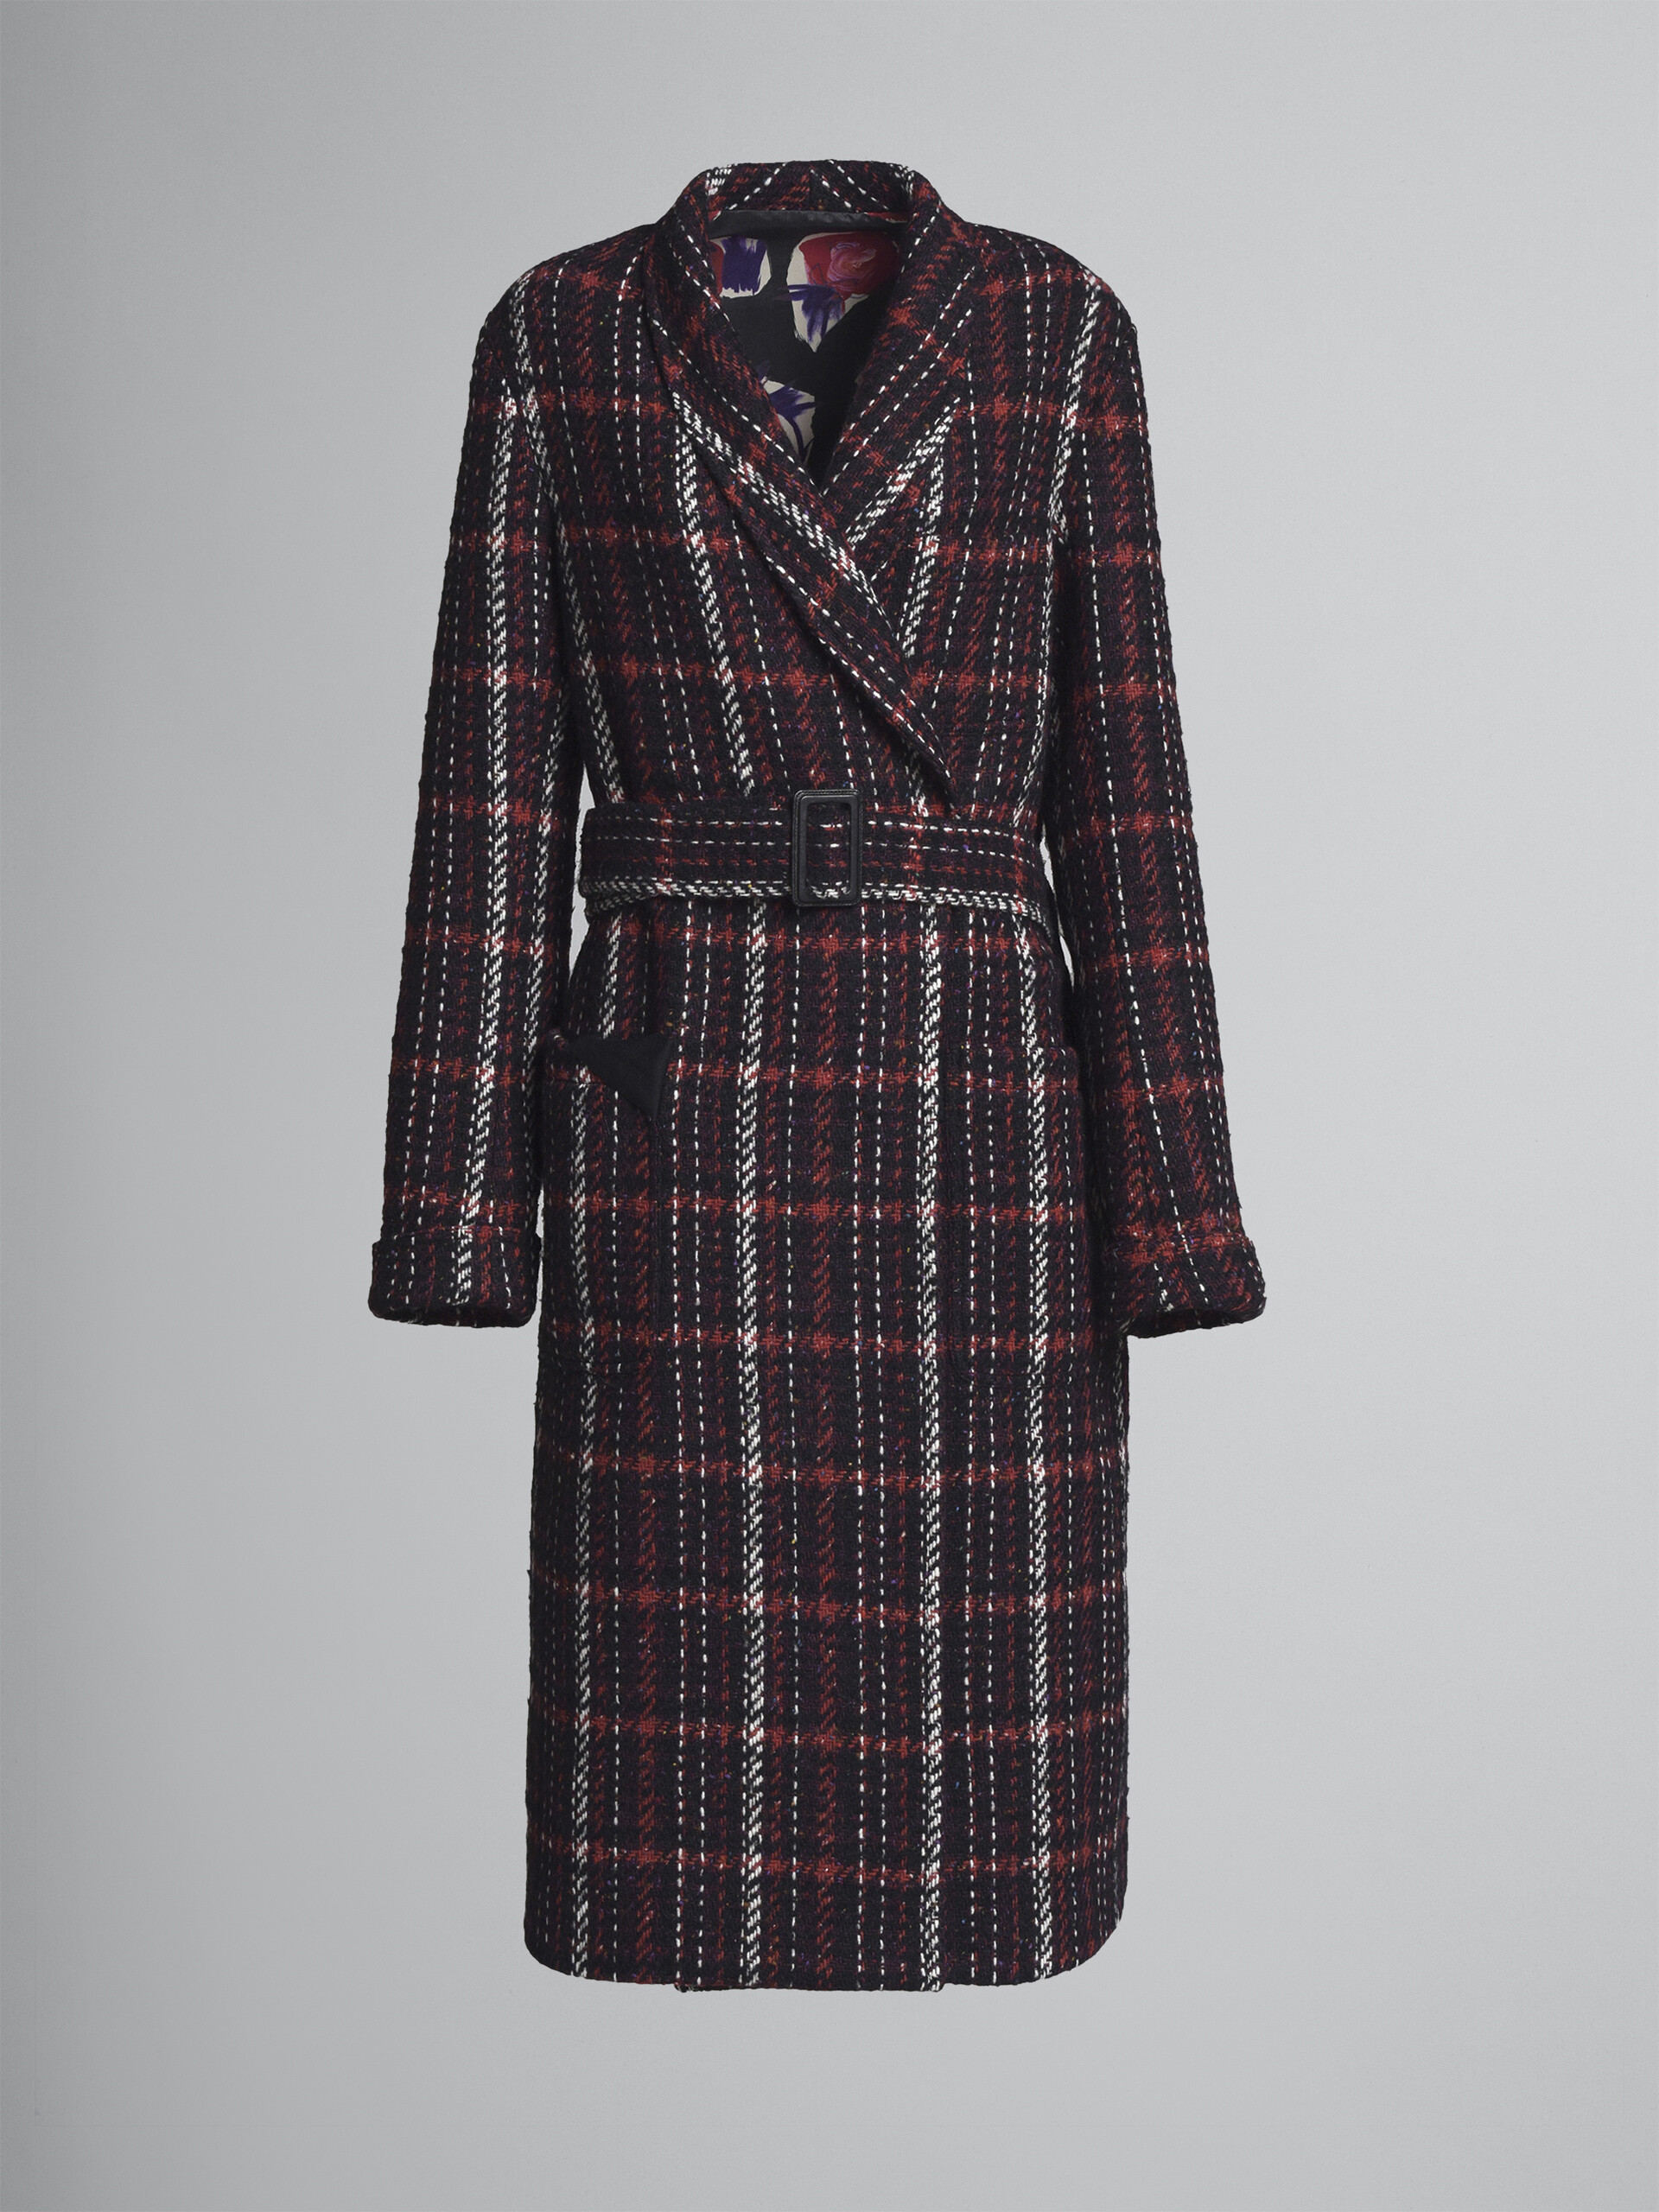 Speckled tweed coat - Coat - Image 1